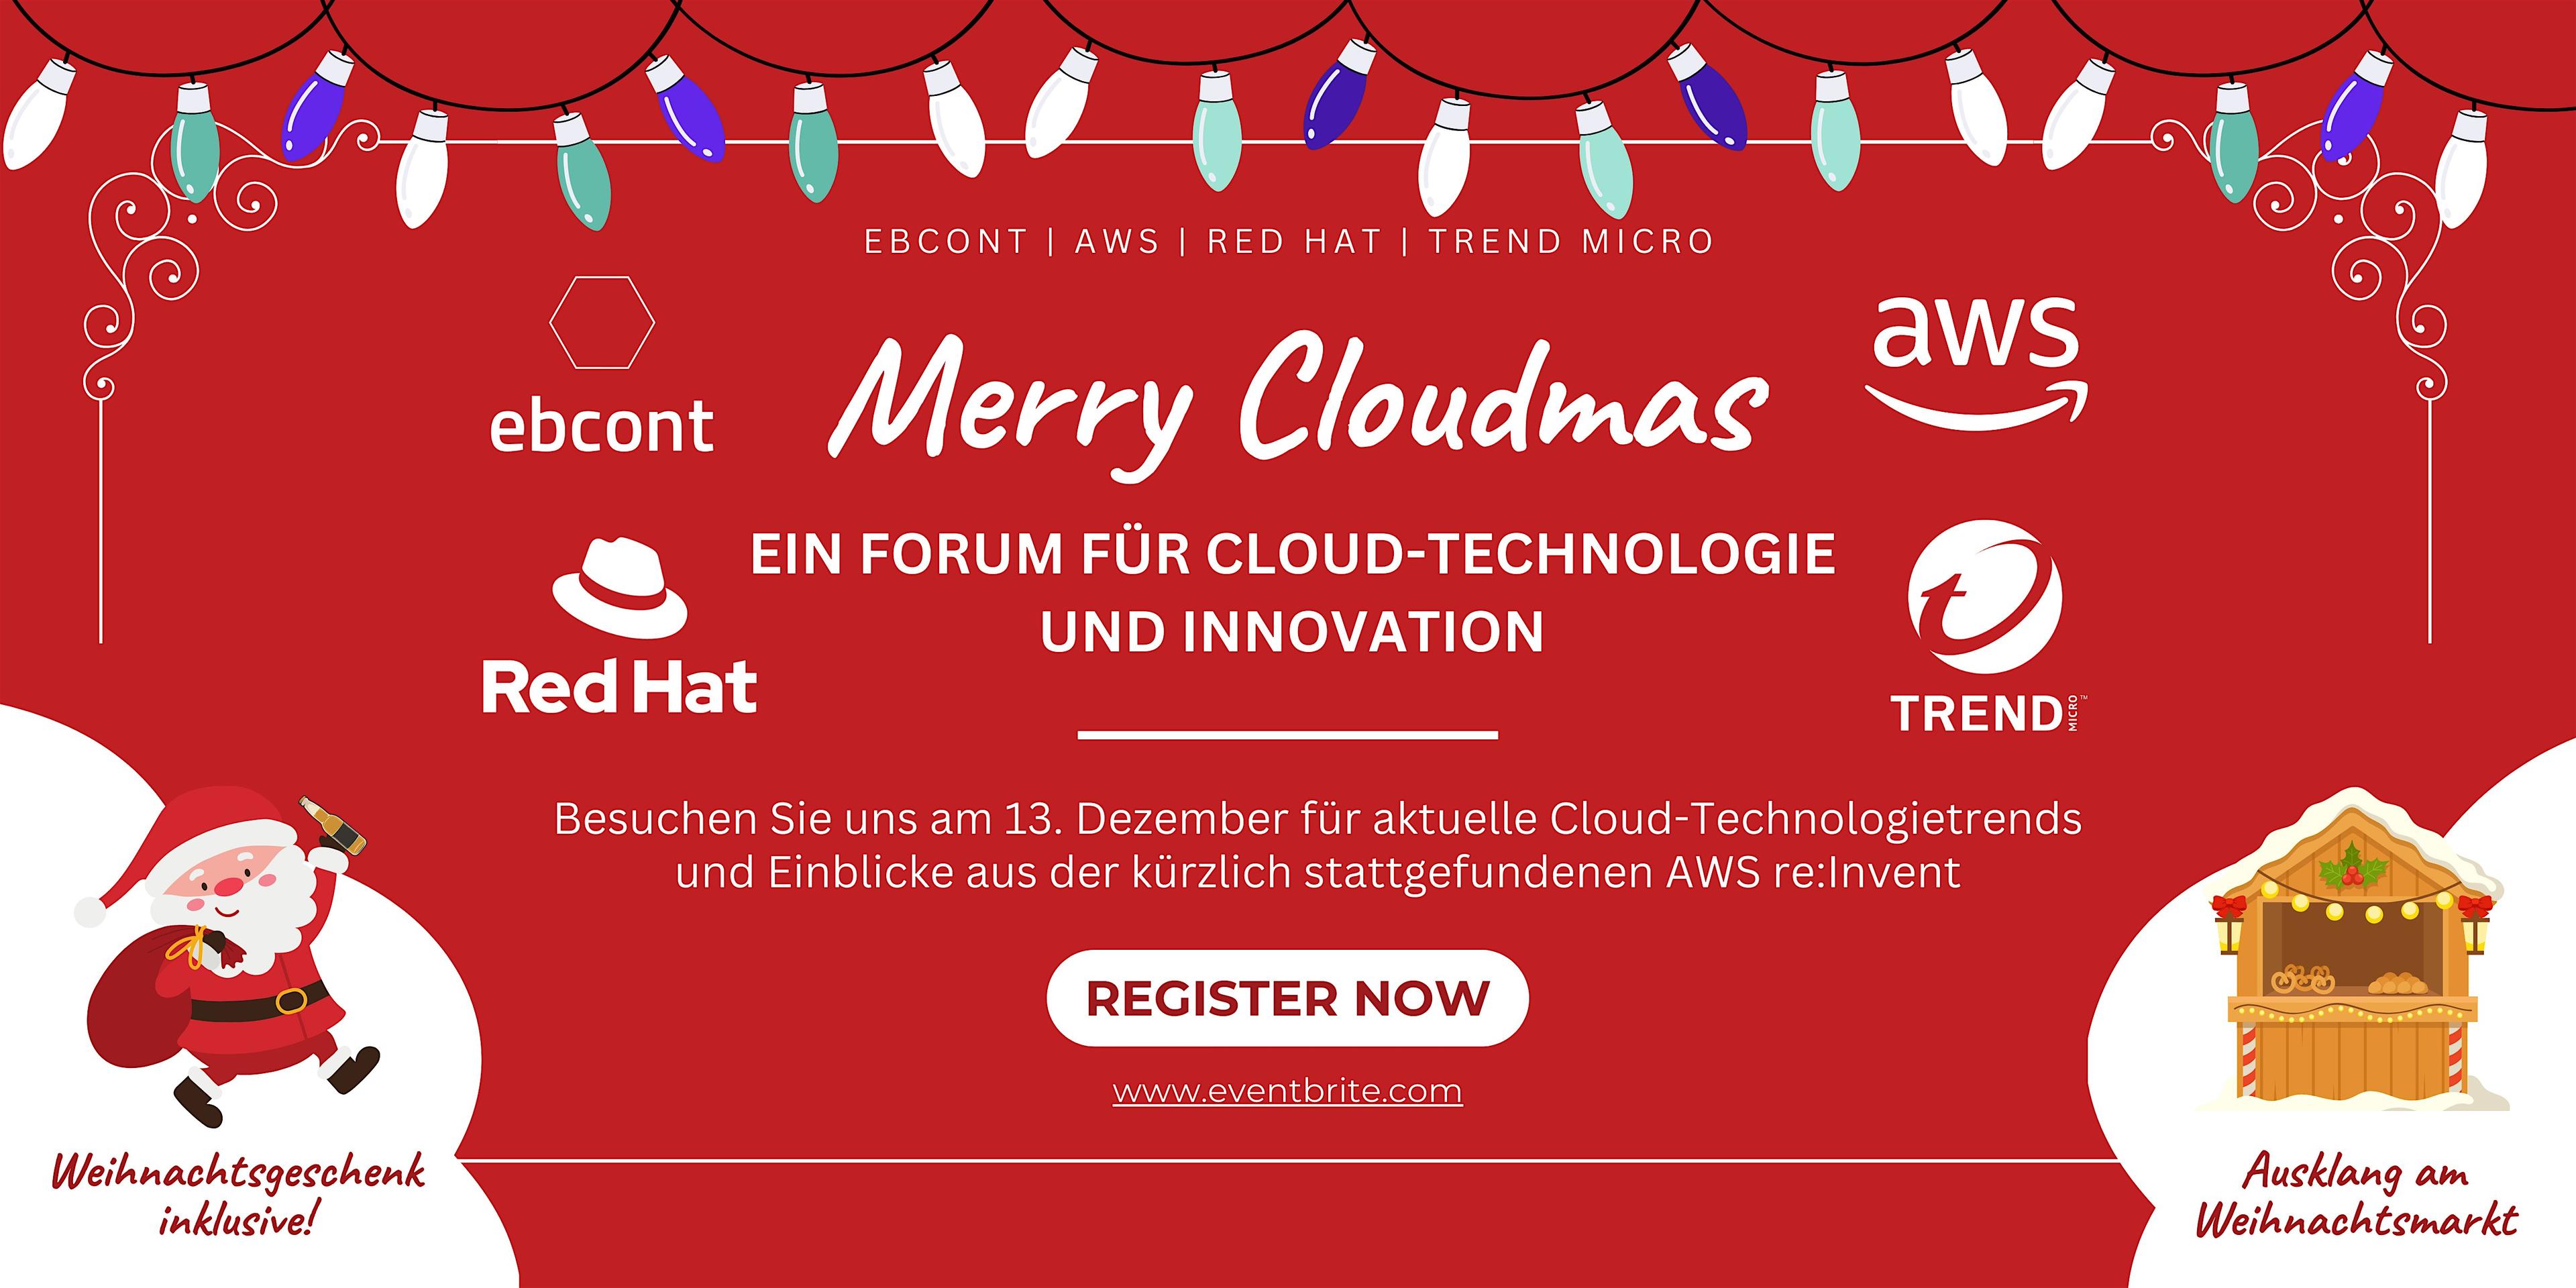 "Merry Cloudmas" - Ein Forum für Cloud-Technologie und Innovation